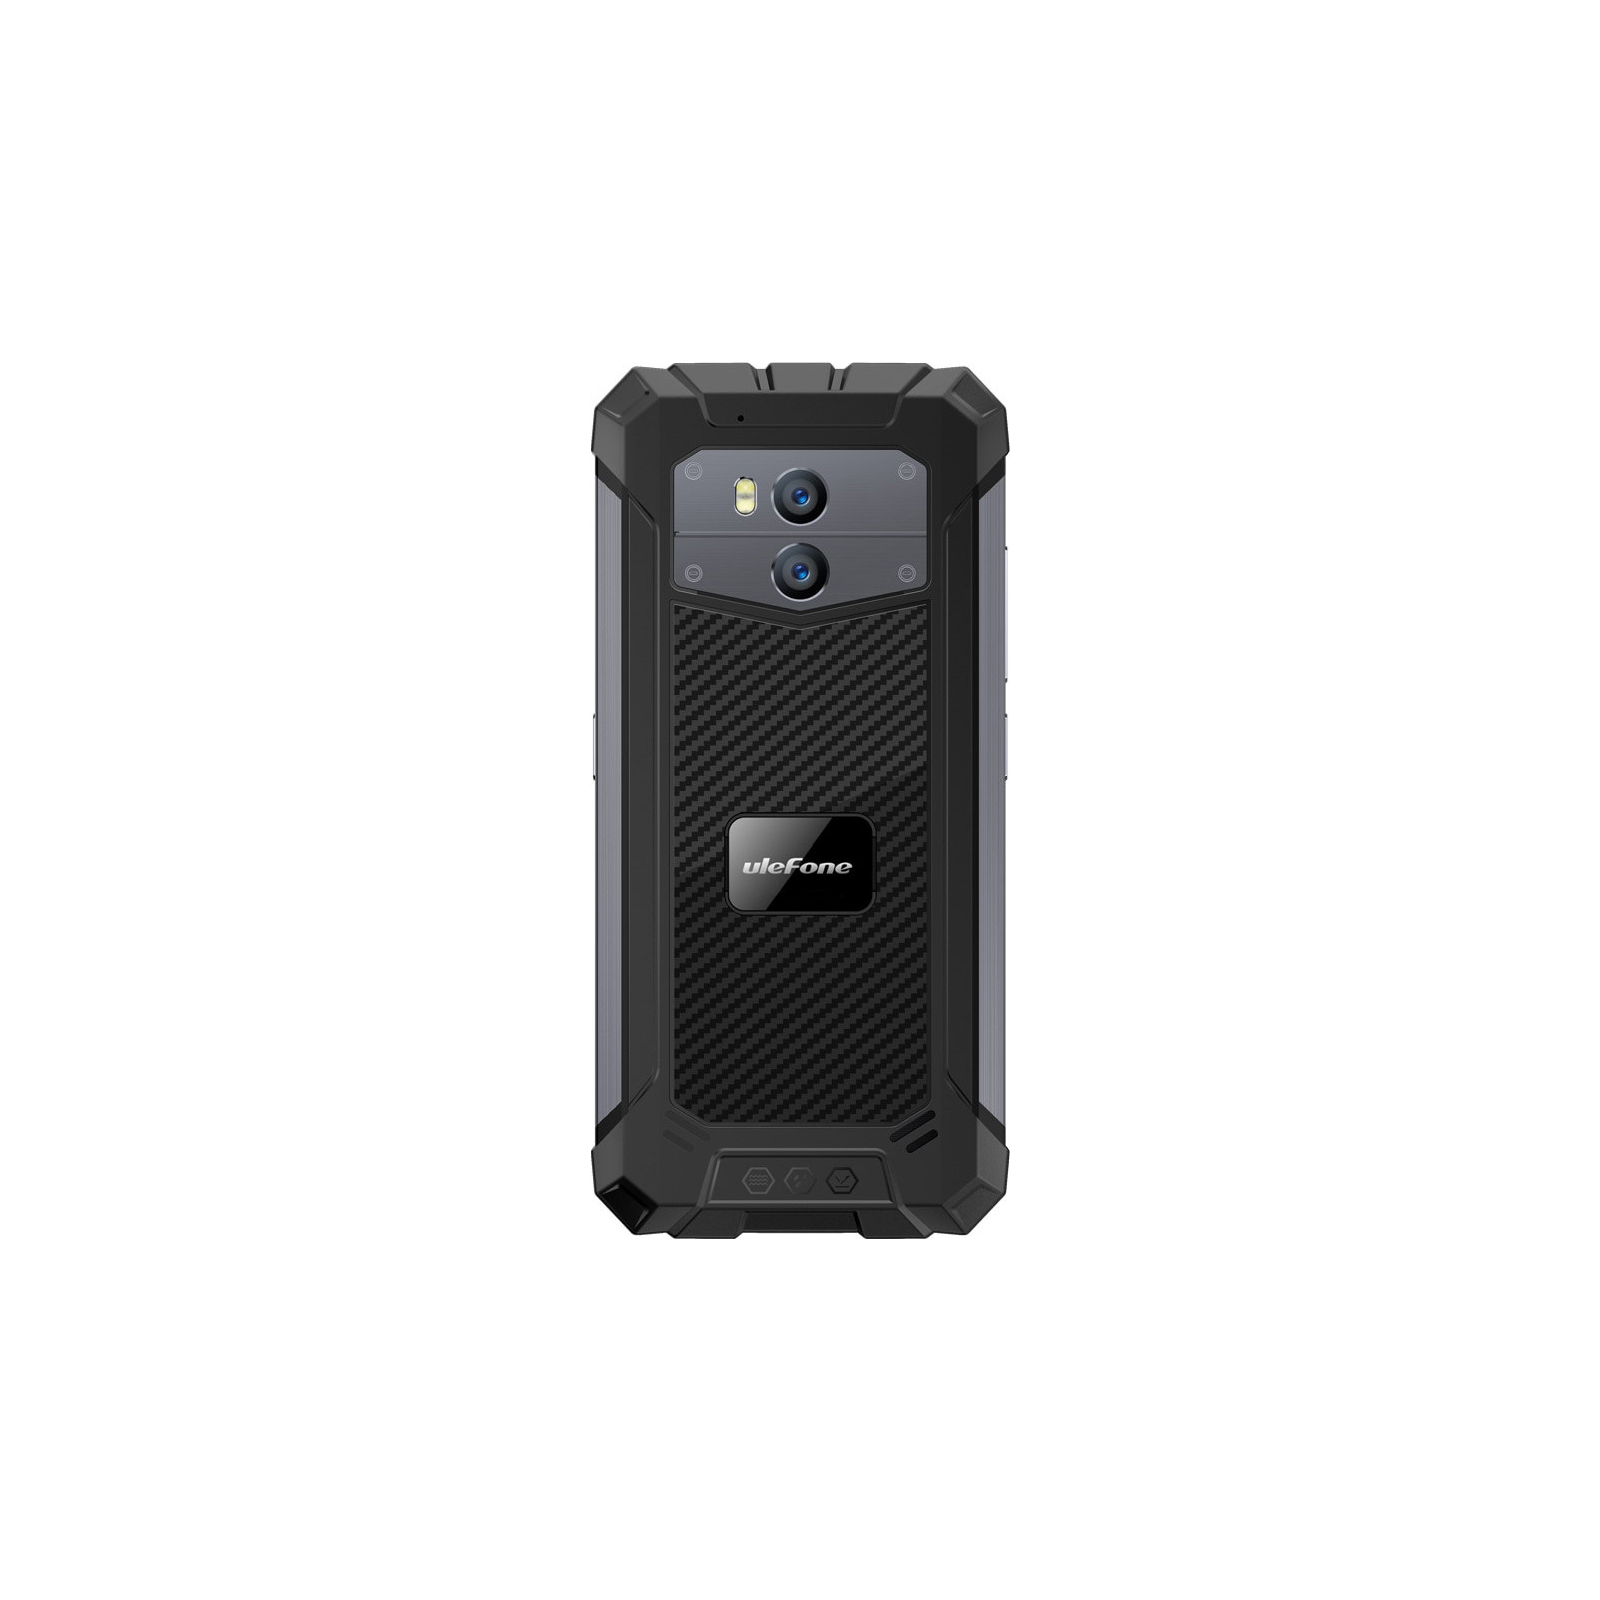 Мобильный телефон Ulefone Armor X2 Dark Grey (6937748732785) изображение 2